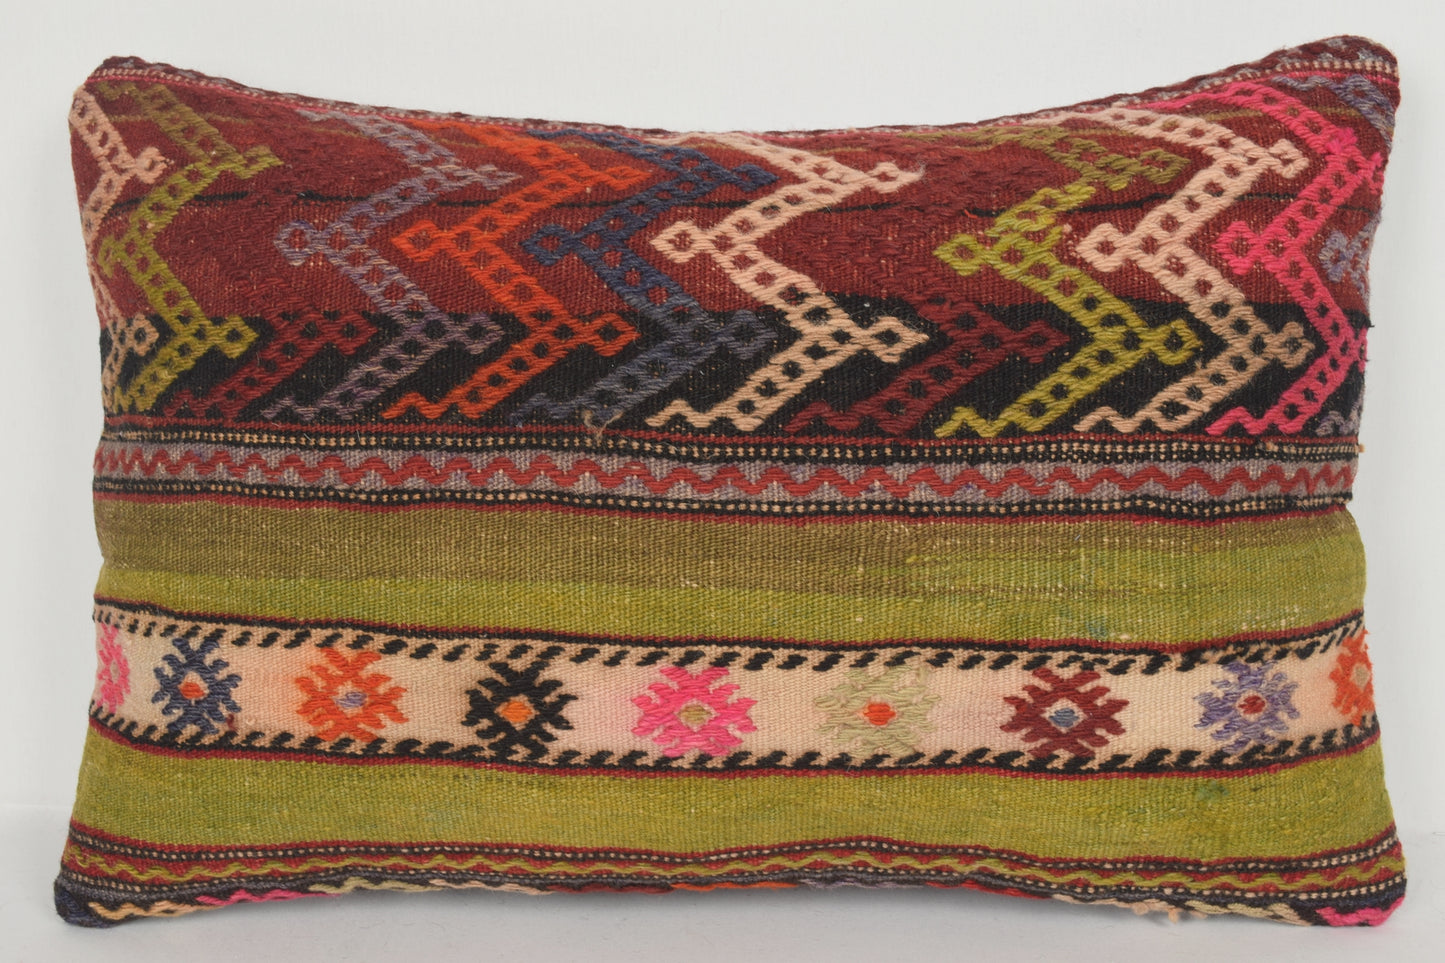 Wayfair Kilim Cushions E00617 Lumbar Nautical Cotton Couch